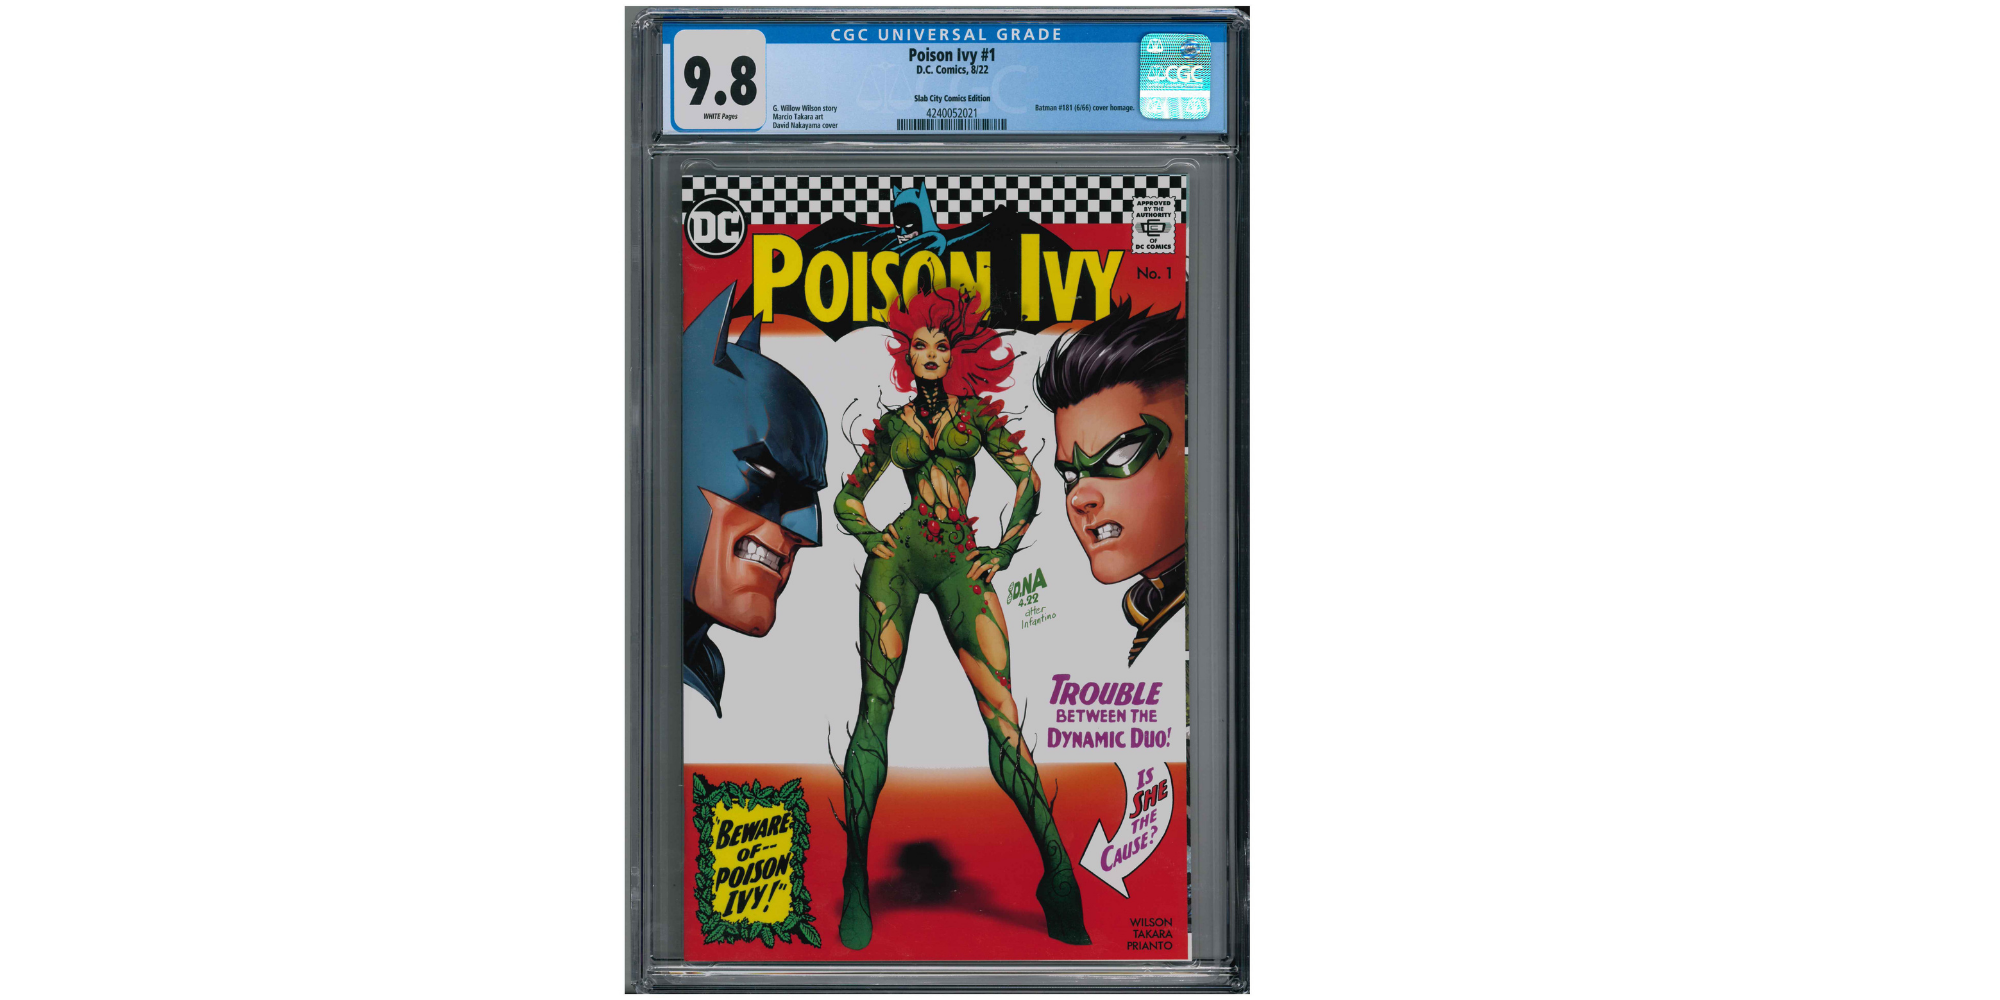 Poison Ivy #1 in der neuen unbeschädigten CGC Hülle